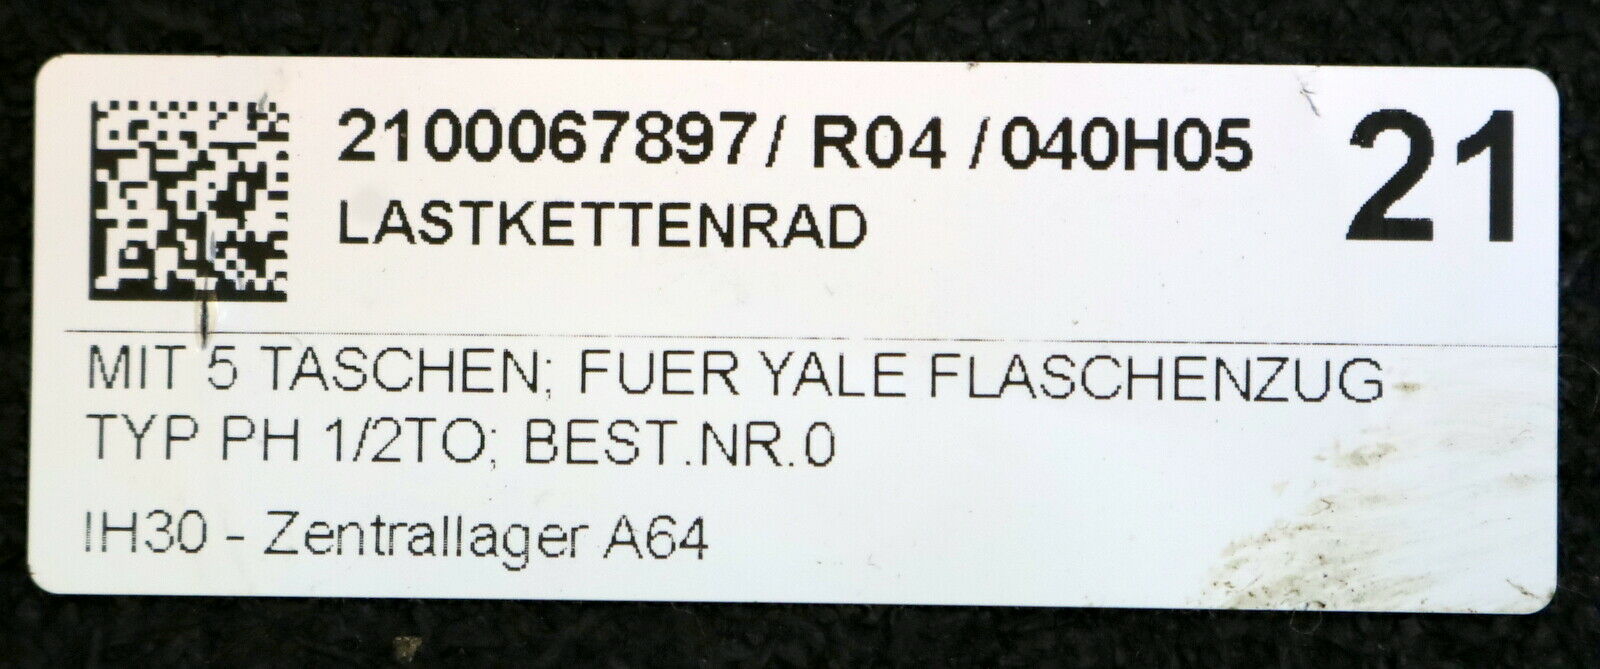 YALE Lastkettenrad mit 5 Taschen Best.Nr. 0 300 115 f. YALE Flaschenzug PH 1/2TO